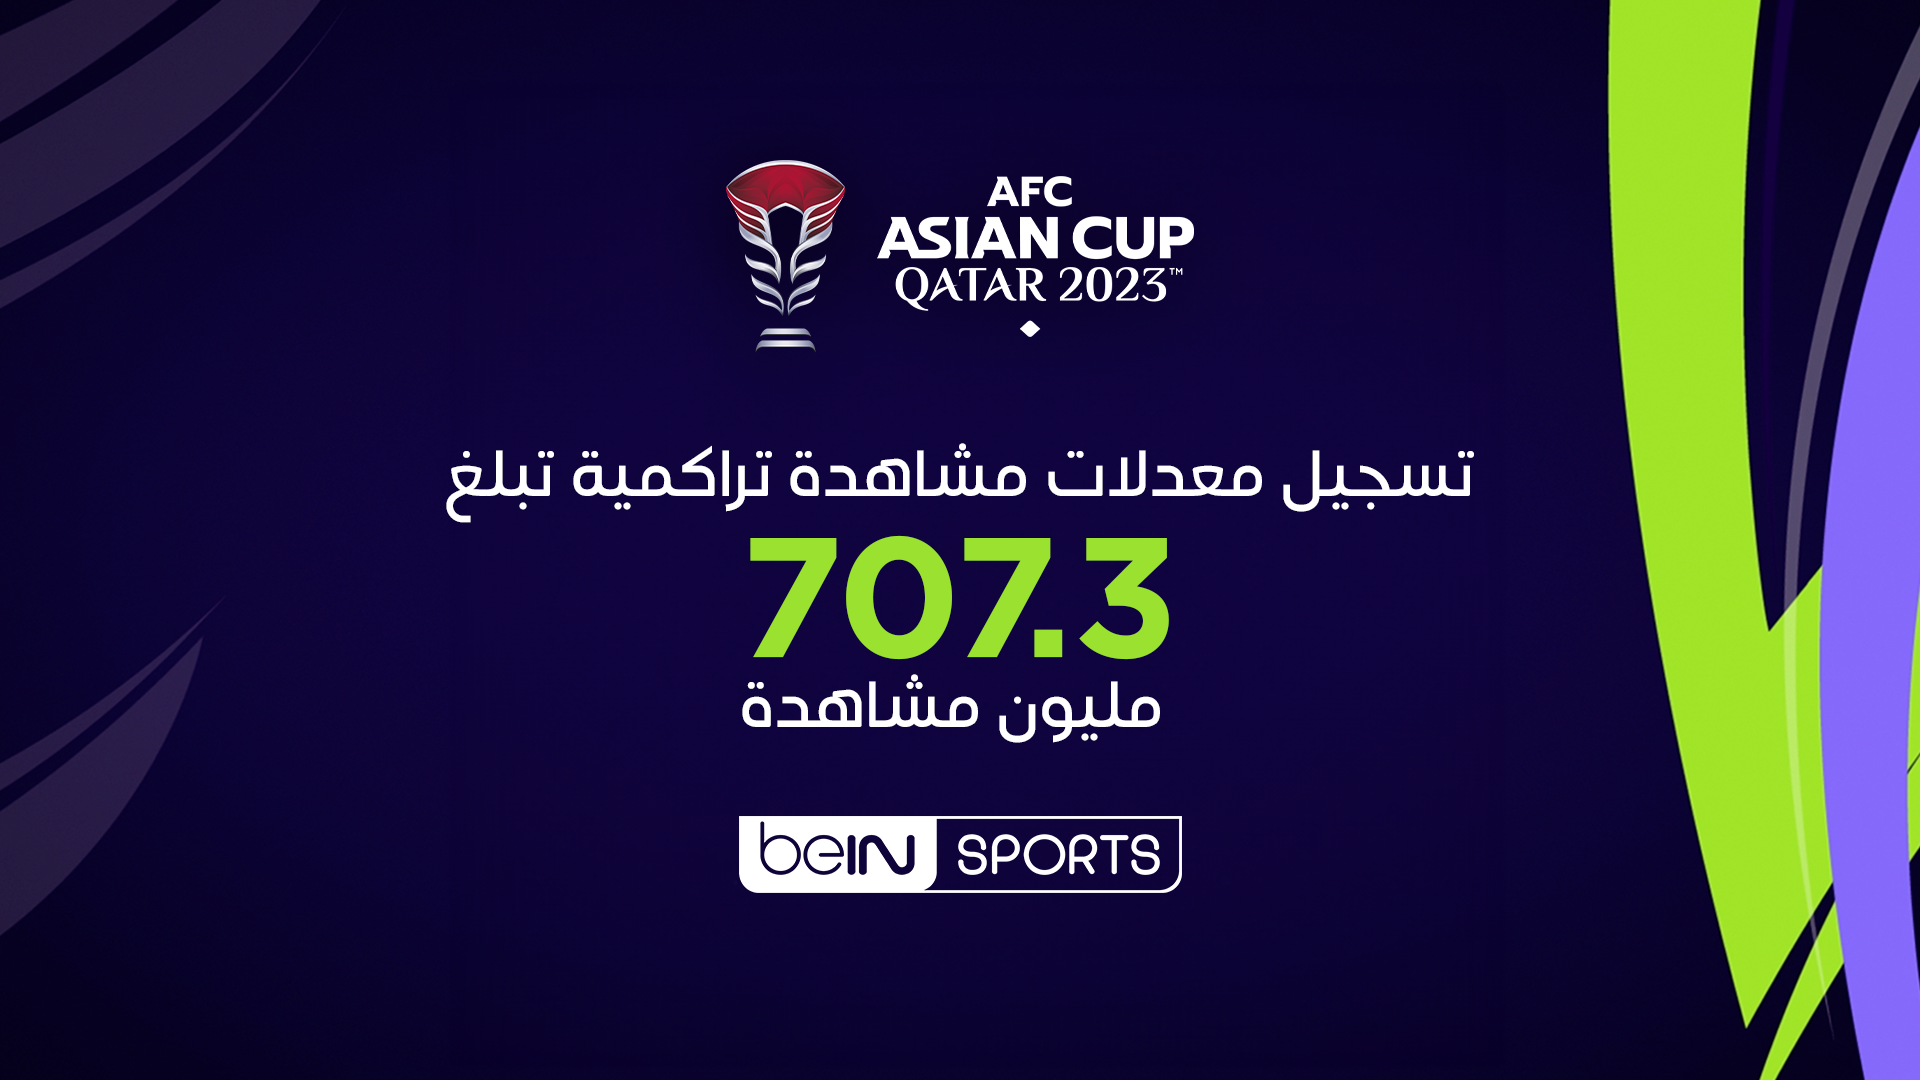 beIN SPORTS تحقق معدلات مشاهدة تراكمية قياسية مع تسجيل 707.3 مليون مشاهدة لبطولة كأس آسيا قطر 2023™.